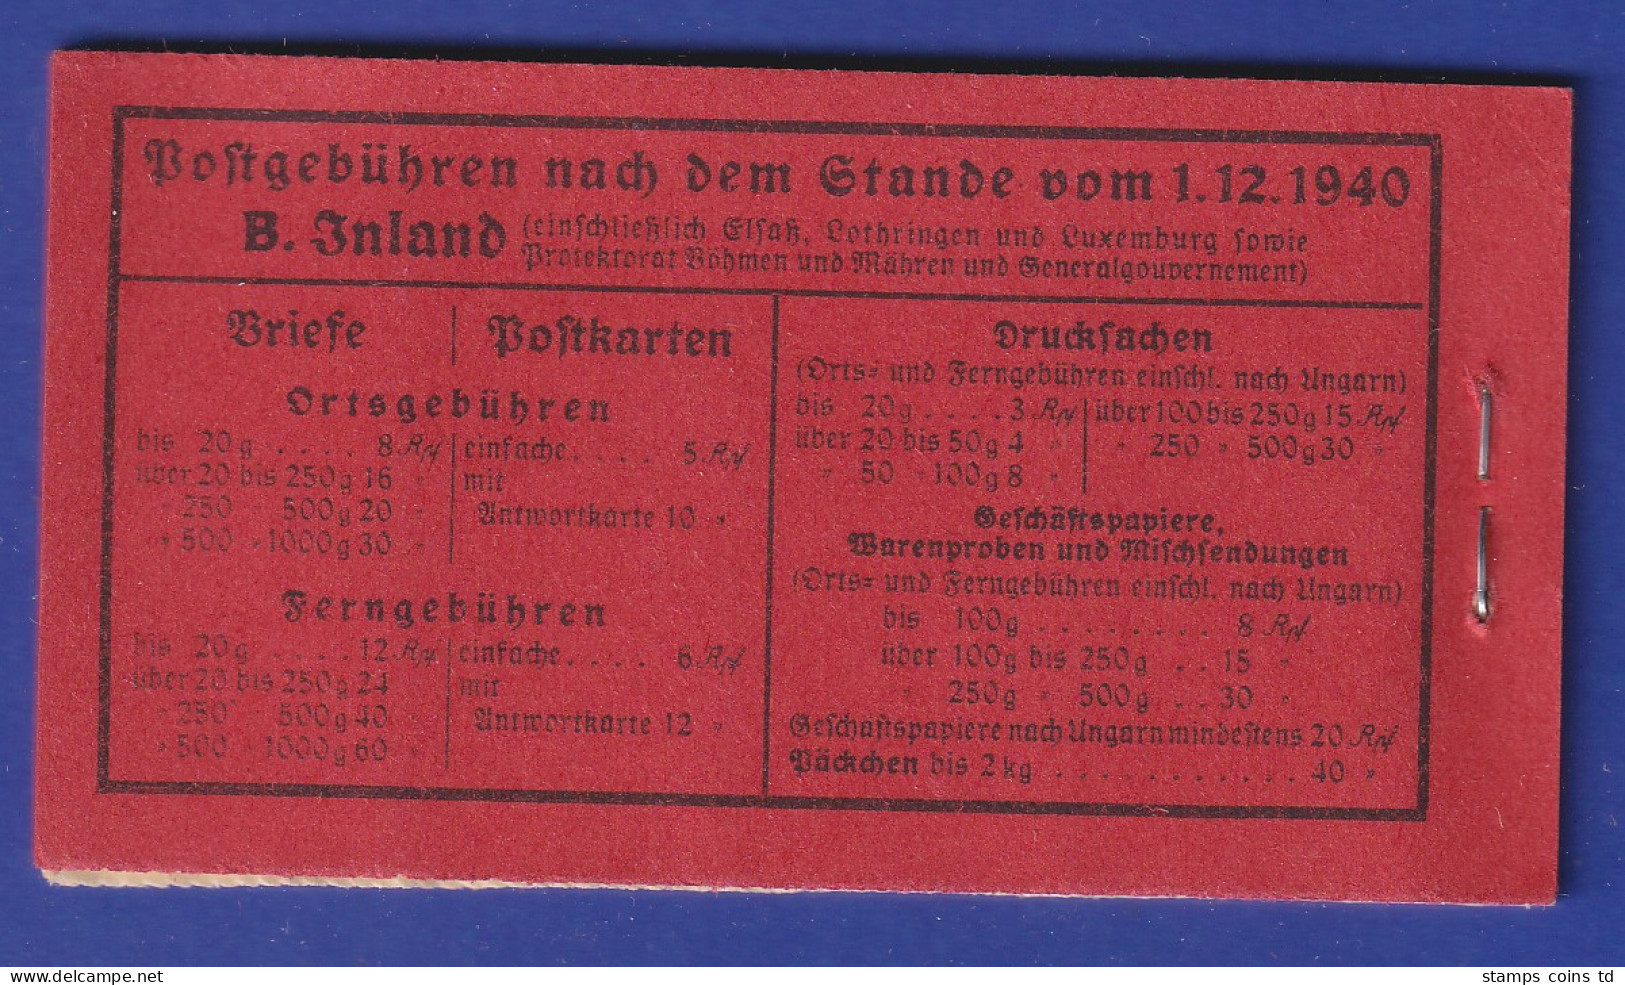 Deutsches Reich 1940/41 Markenheftchen Mi.-Nr. 39.4 Postfrisch ** - Markenheftchen